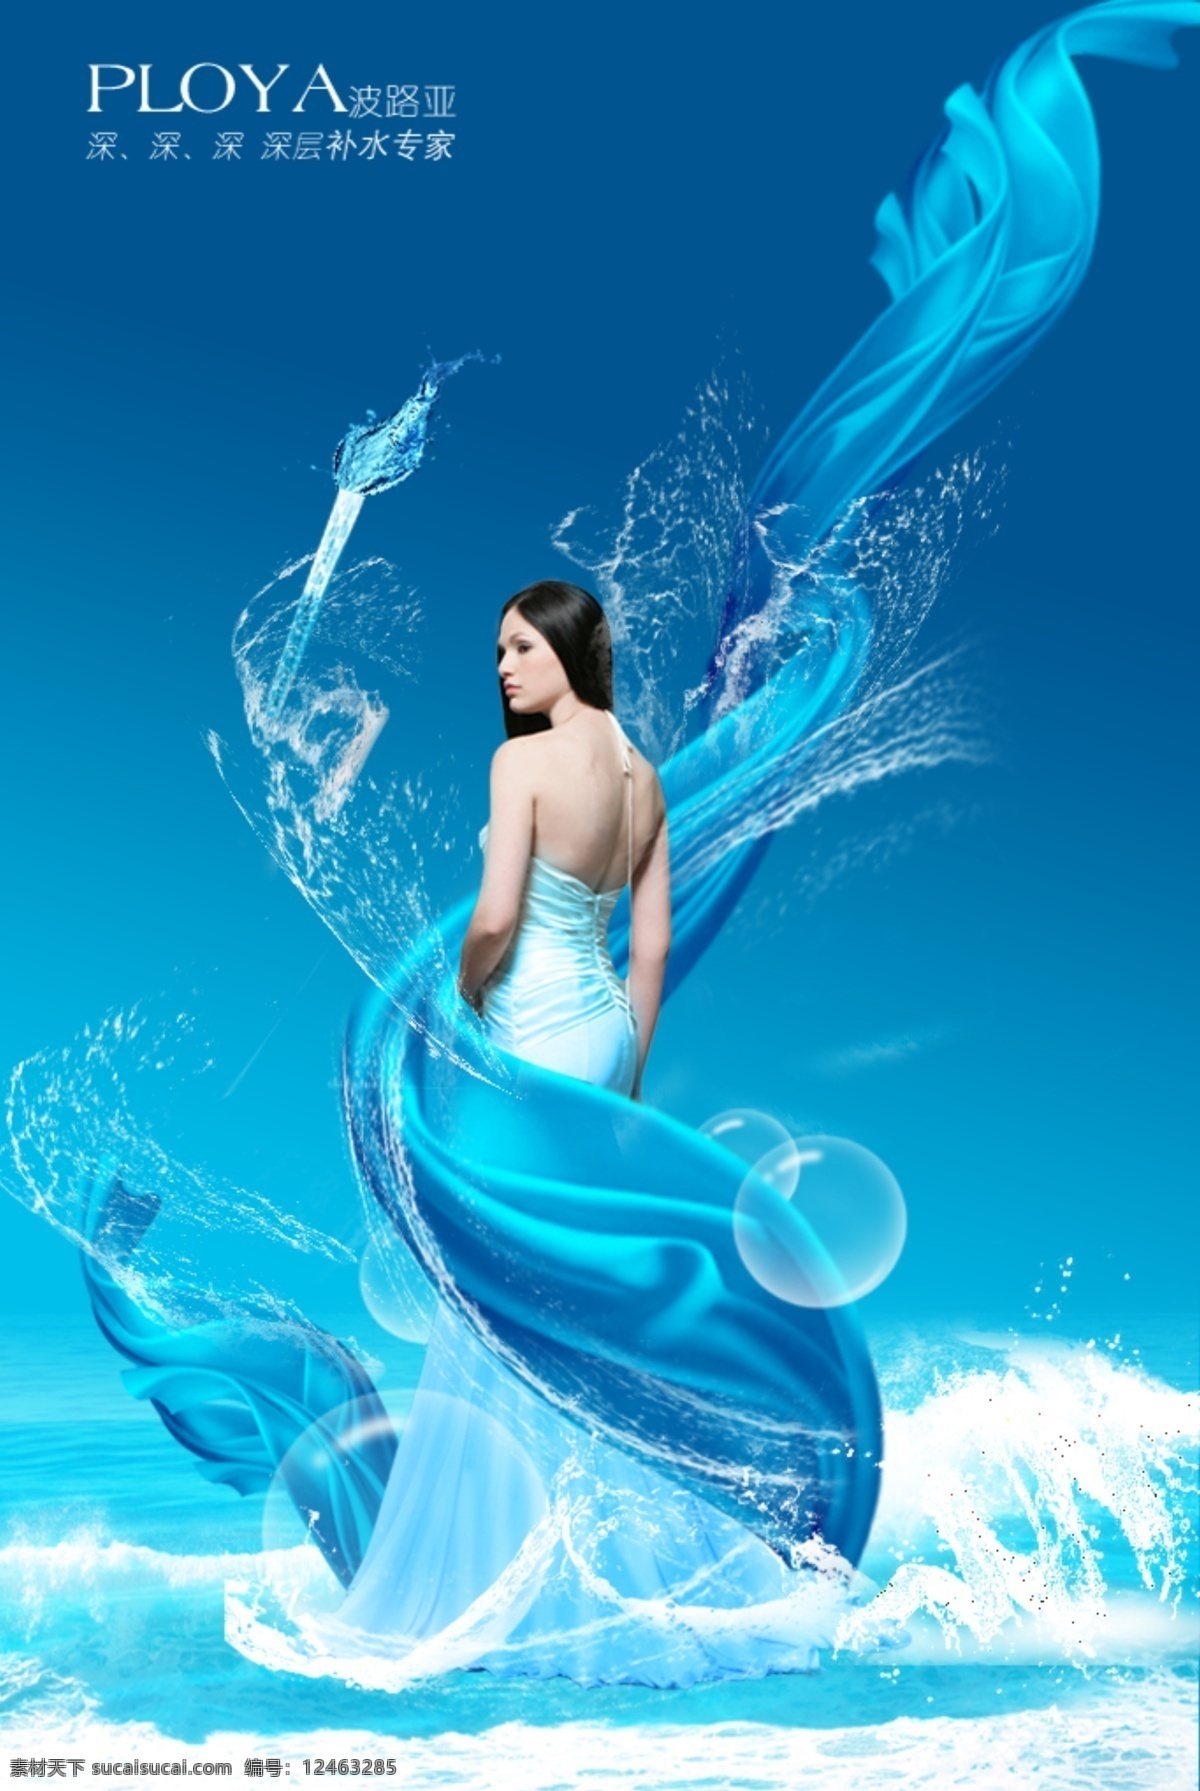 波 路亚 深层 补水 专家 美女 丝绸 蓝色背景 海水 泡泡 溅射的水 青色 天蓝色